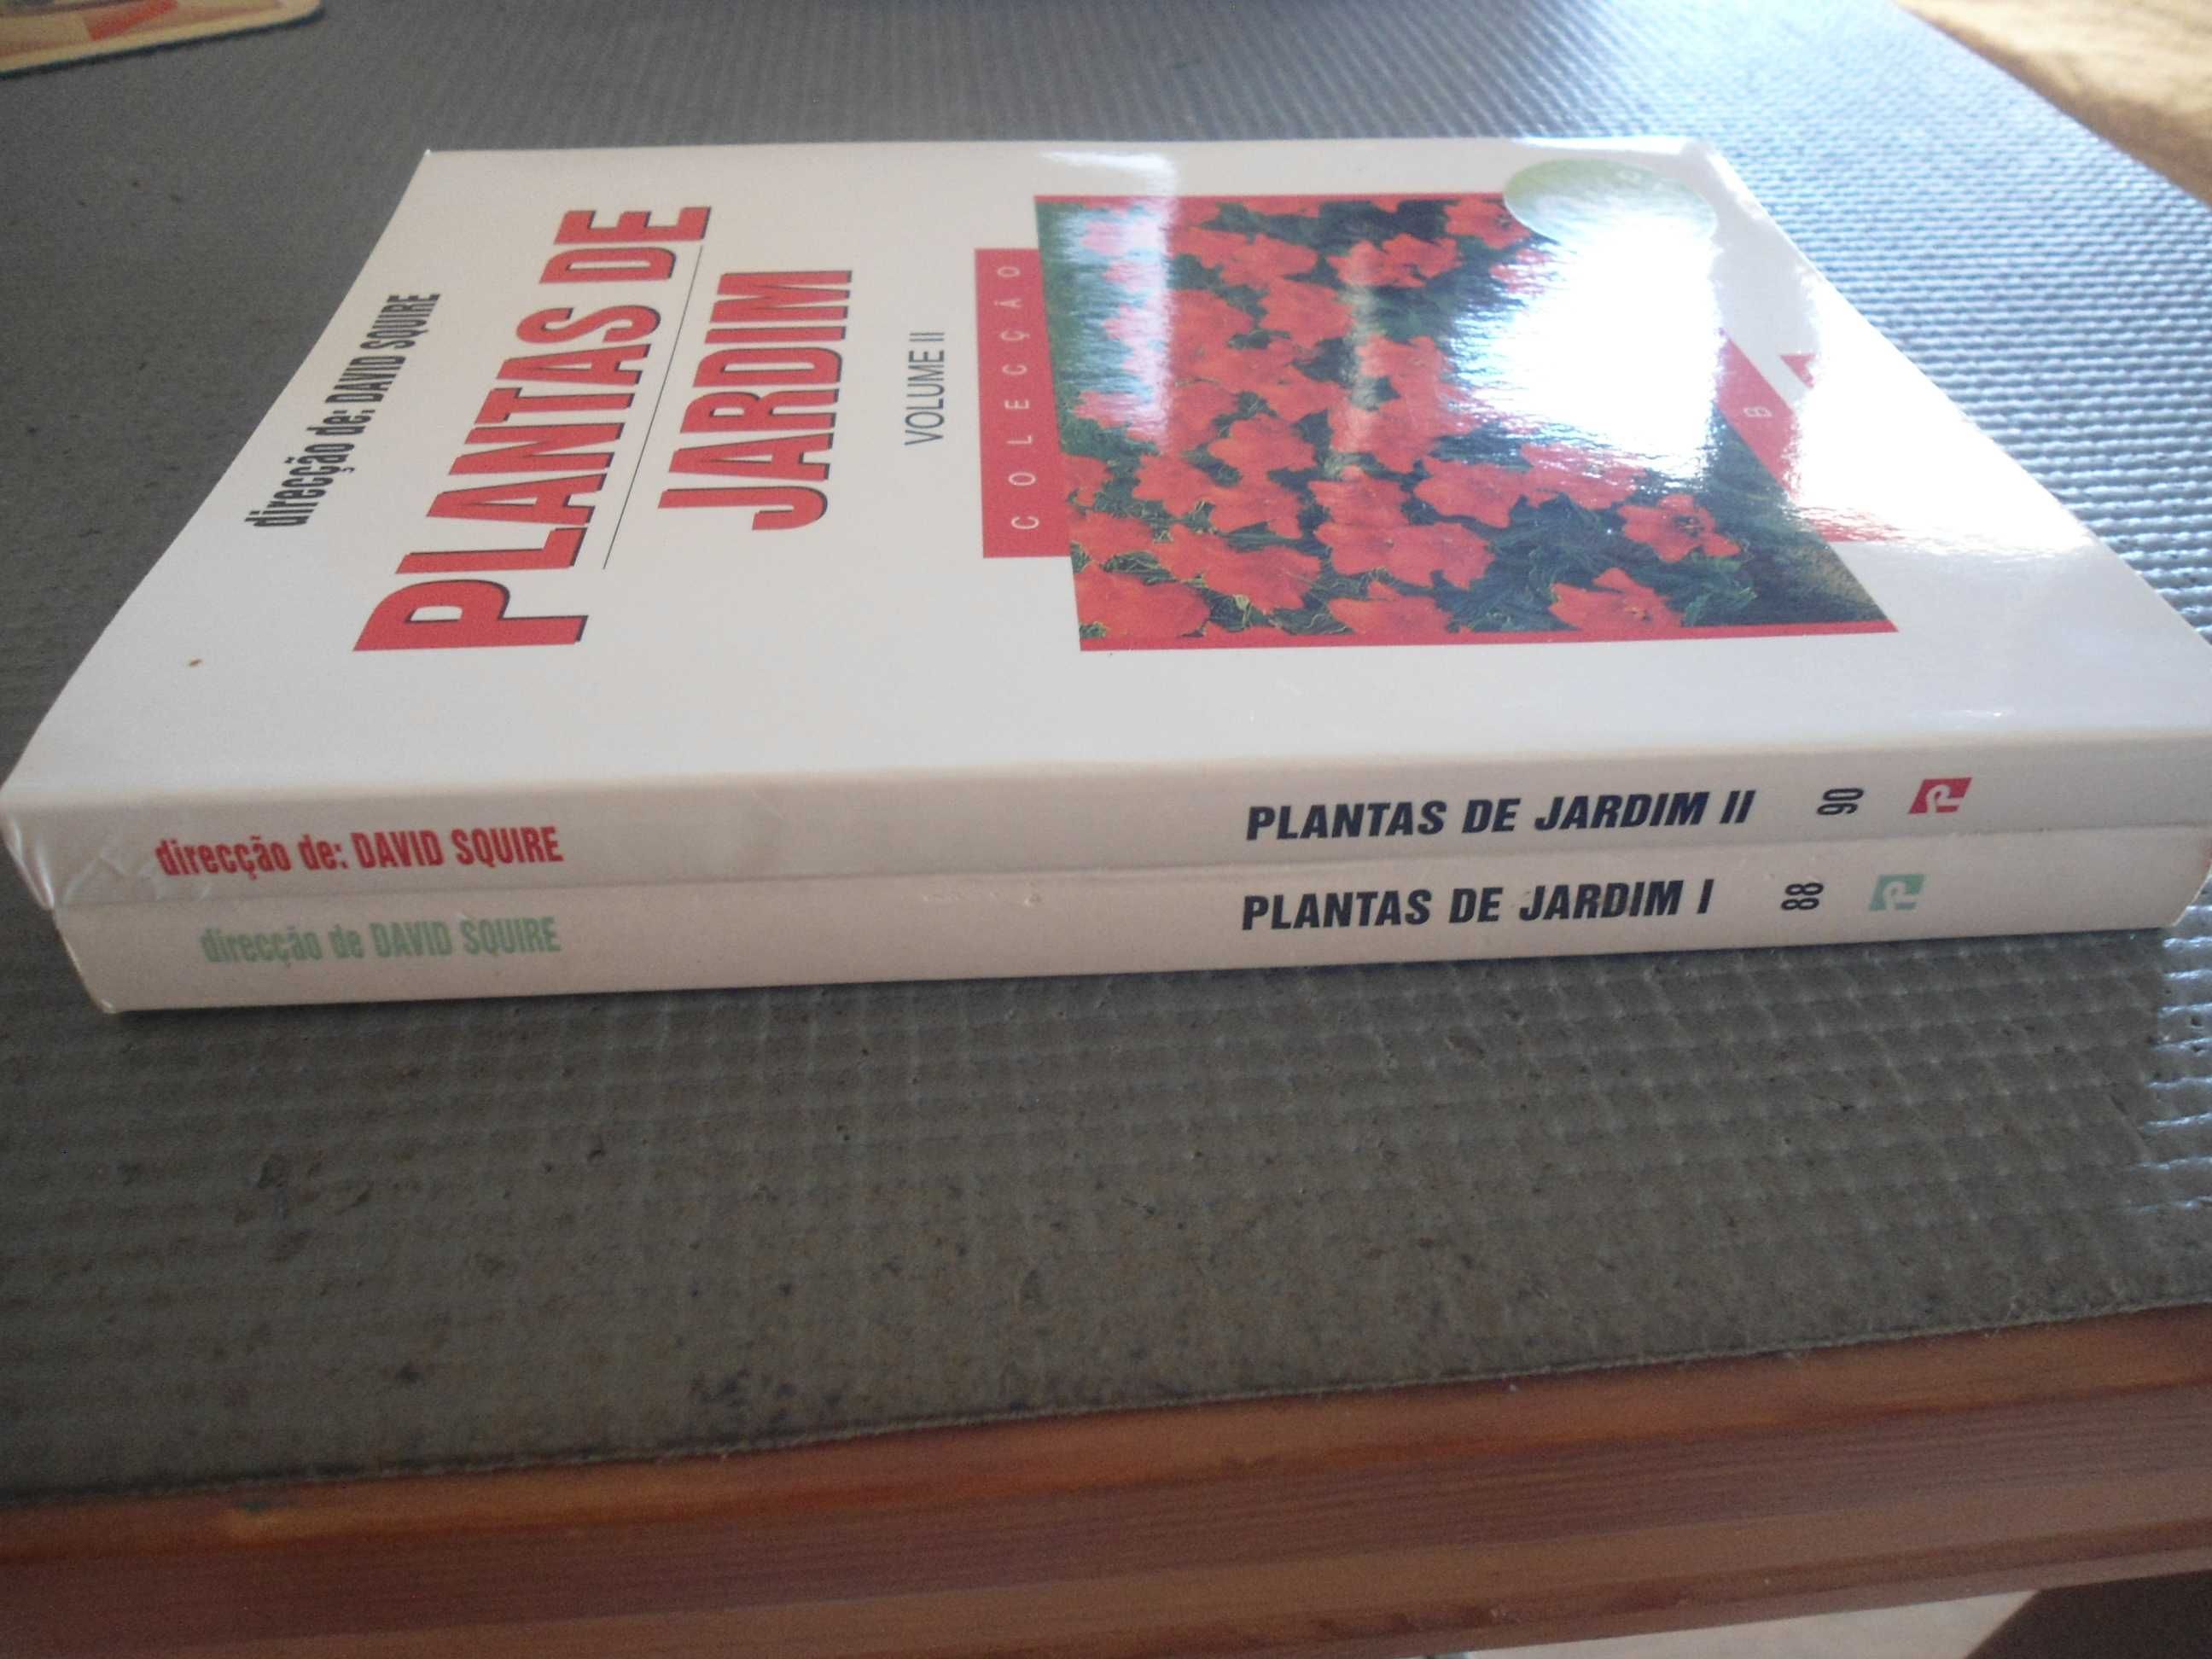 Plantas de Jardim por David Squire (2 volumes)